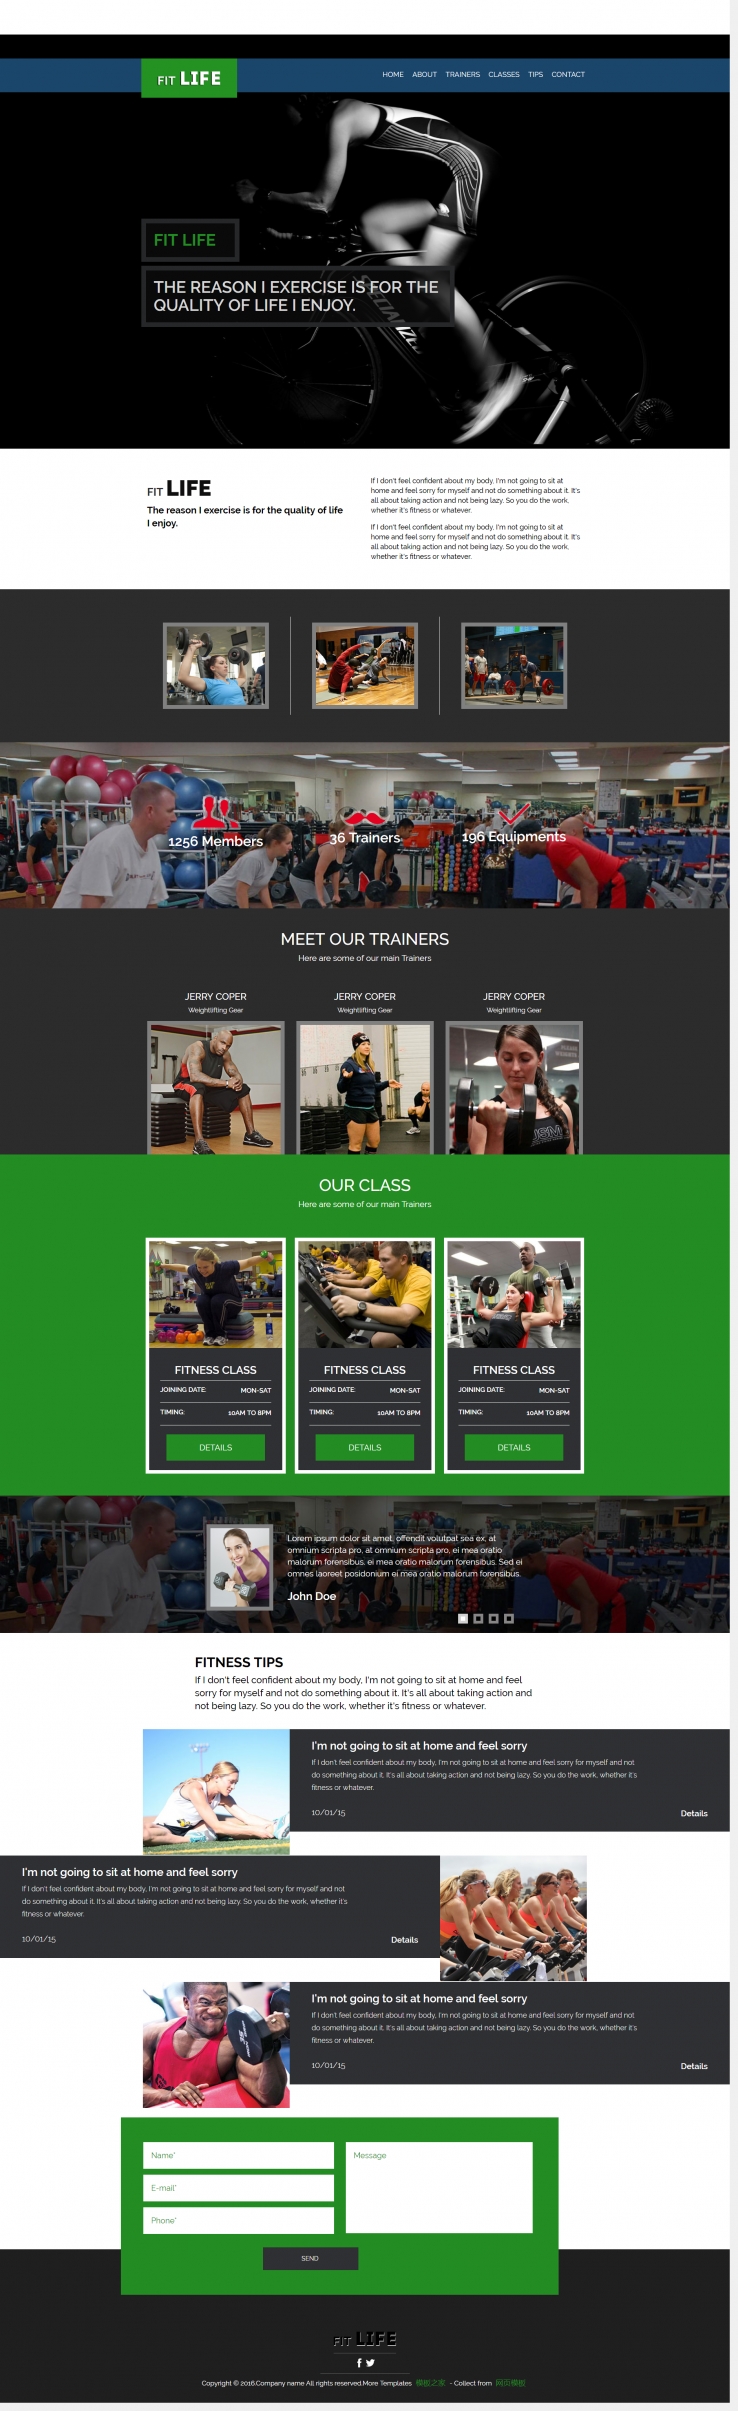 黑色炫酷风的健身运动馆宣传专题网页模板下载